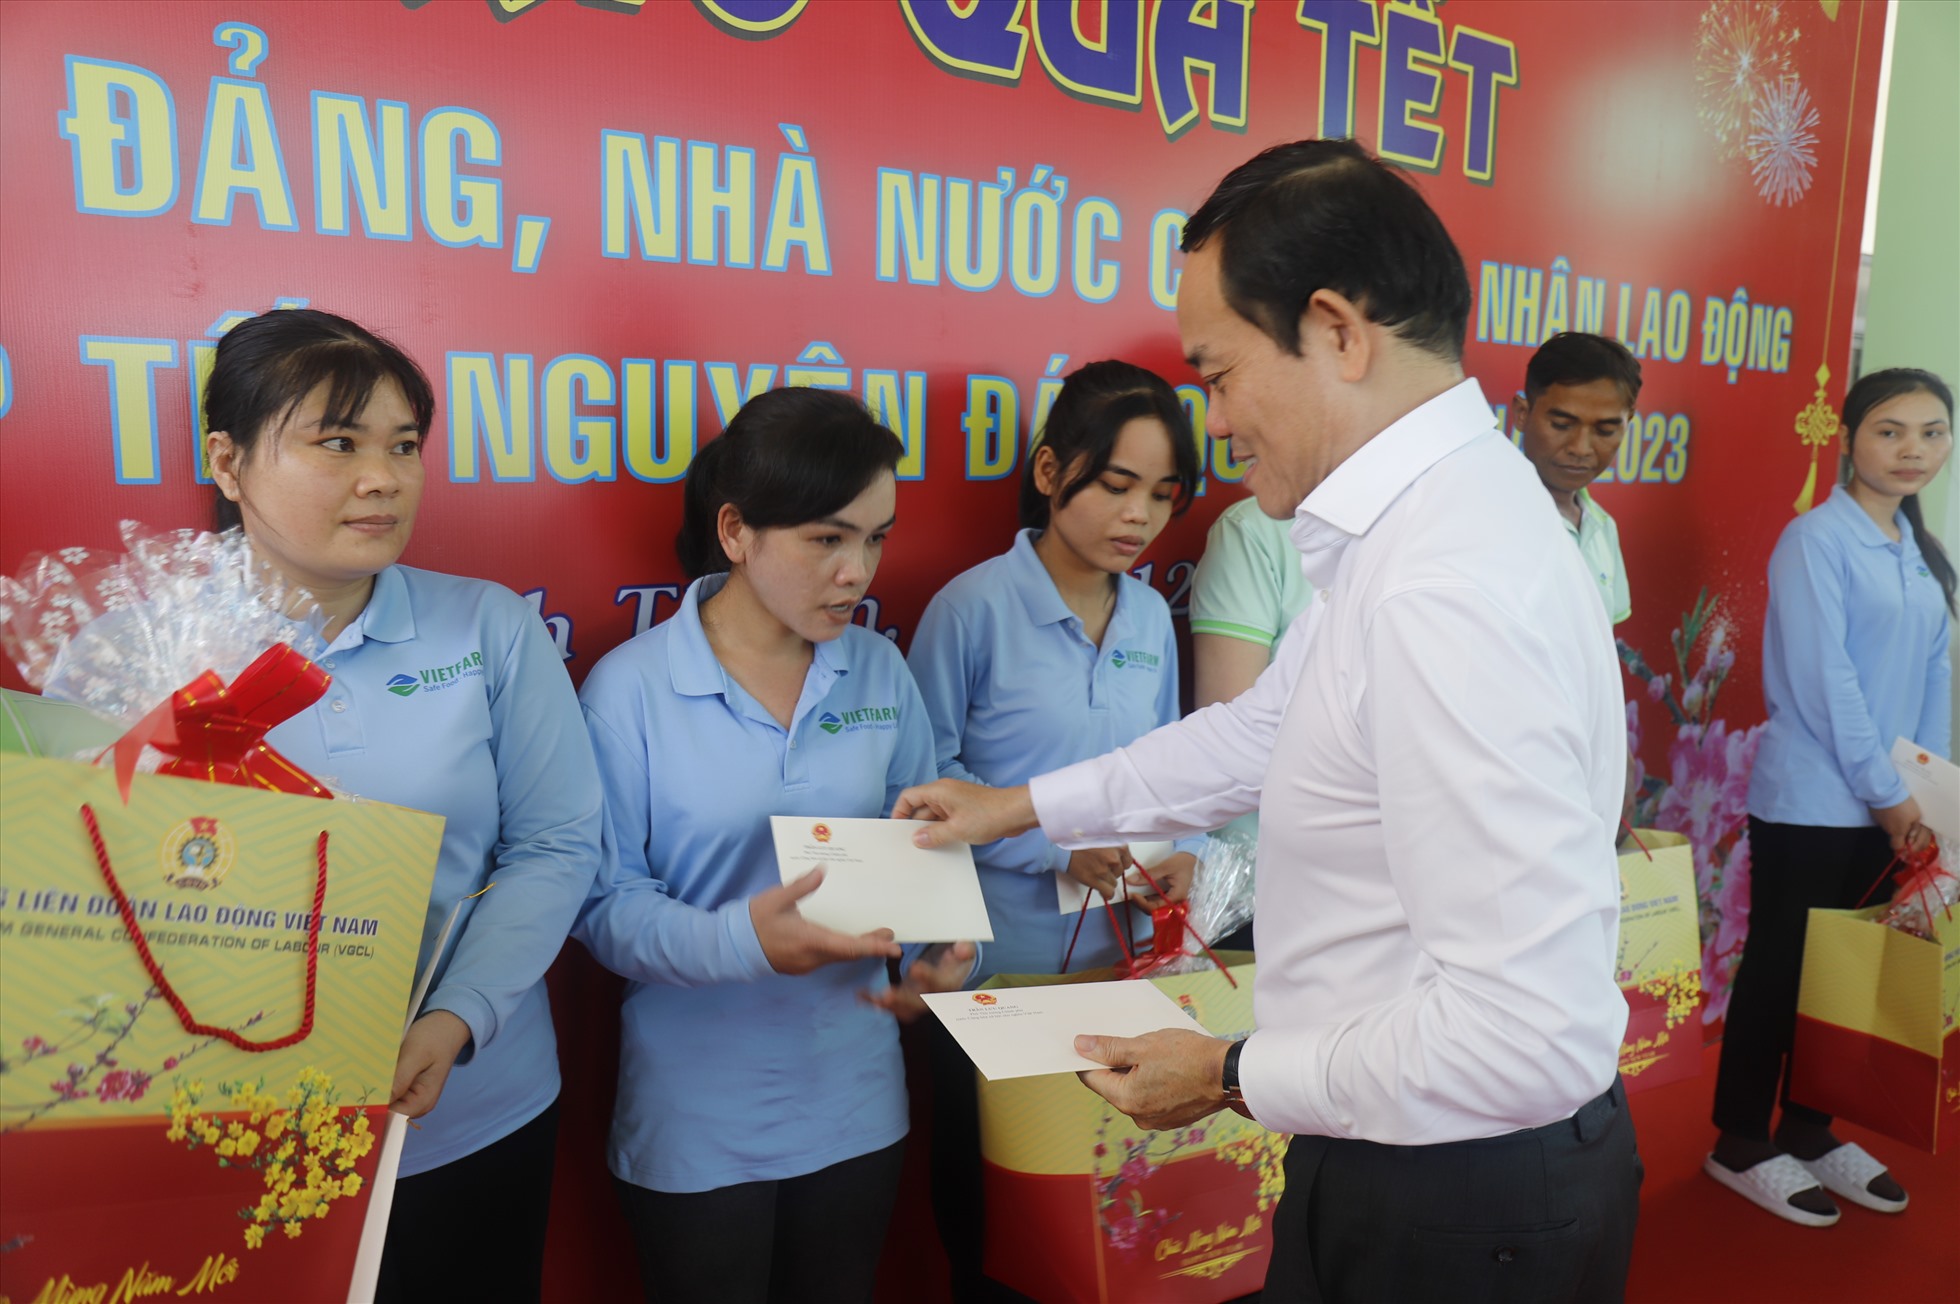 Phó Thủ tướng Trần Lưu Quang tặng quà cho người lao động Ninh Thuận. Ảnh Hữu Long